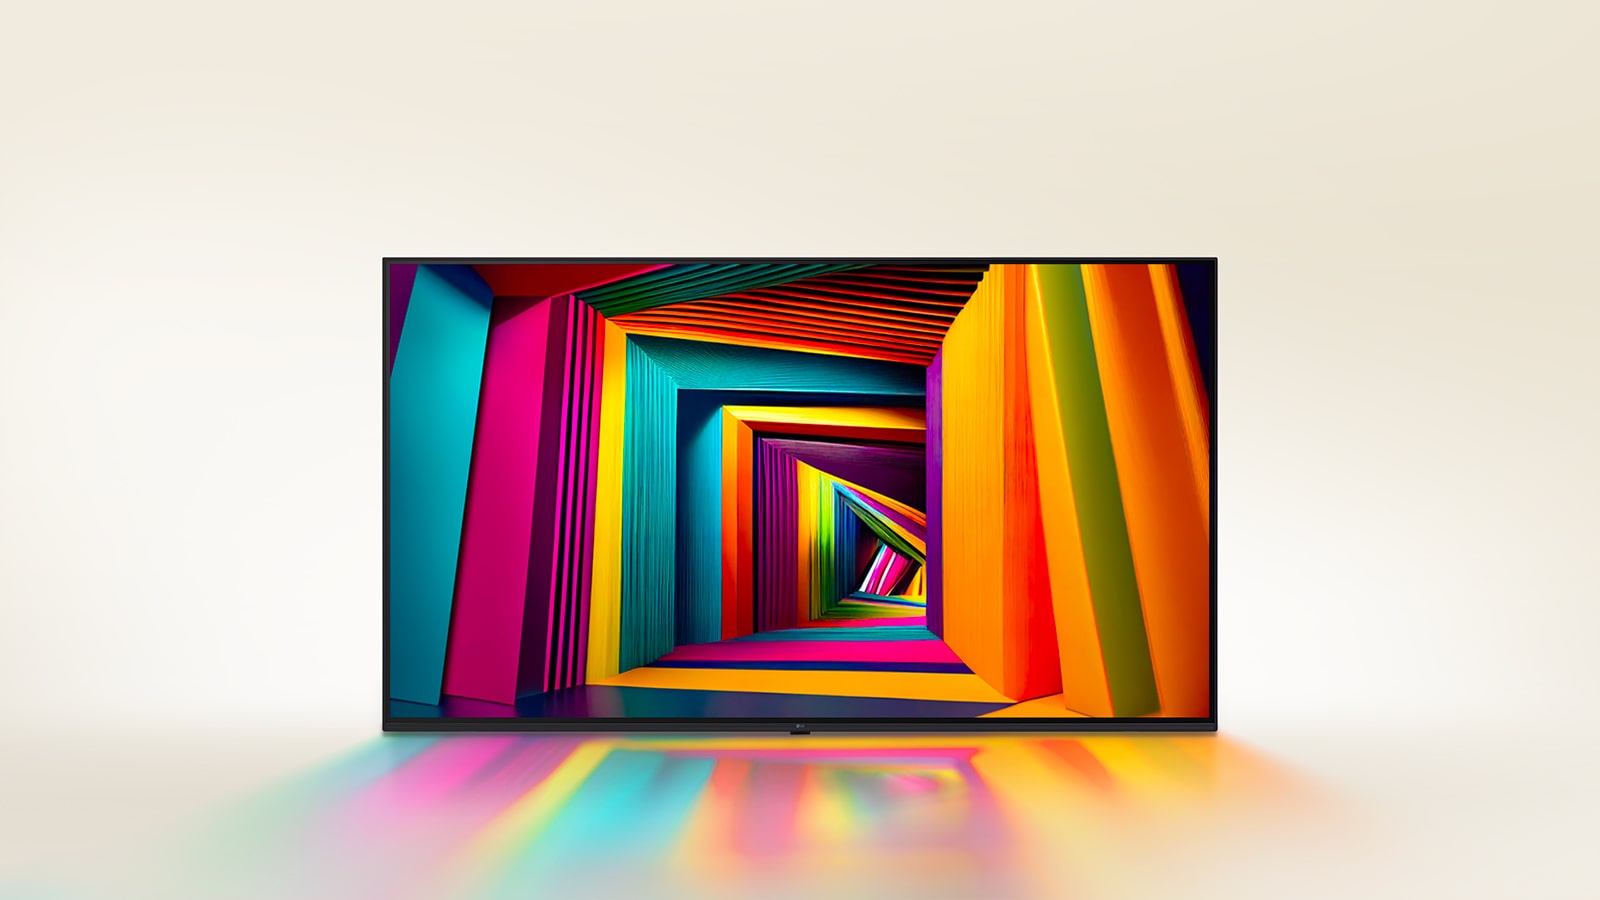 Pestrobarevný tunel čtvercového tvaru, který se směrem dozadu postupně zužuje, zobrazený na LG TV.